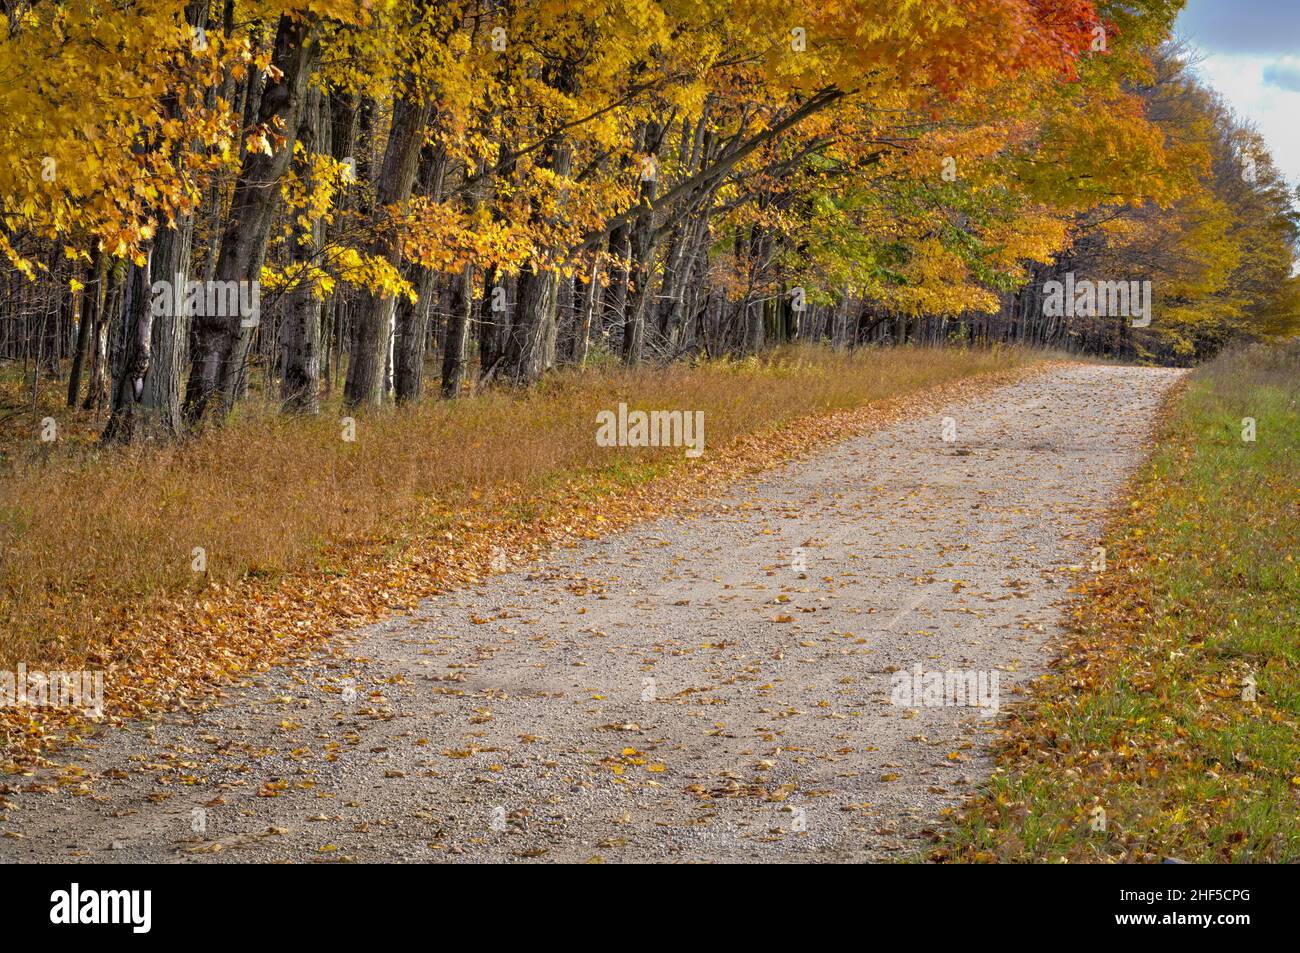 Un exemple de l'écran couleur annuel d'automne qui se produit chaque automne dans le comté de Door, Wisconsin, qui est une destination touristique majeure. Banque D'Images